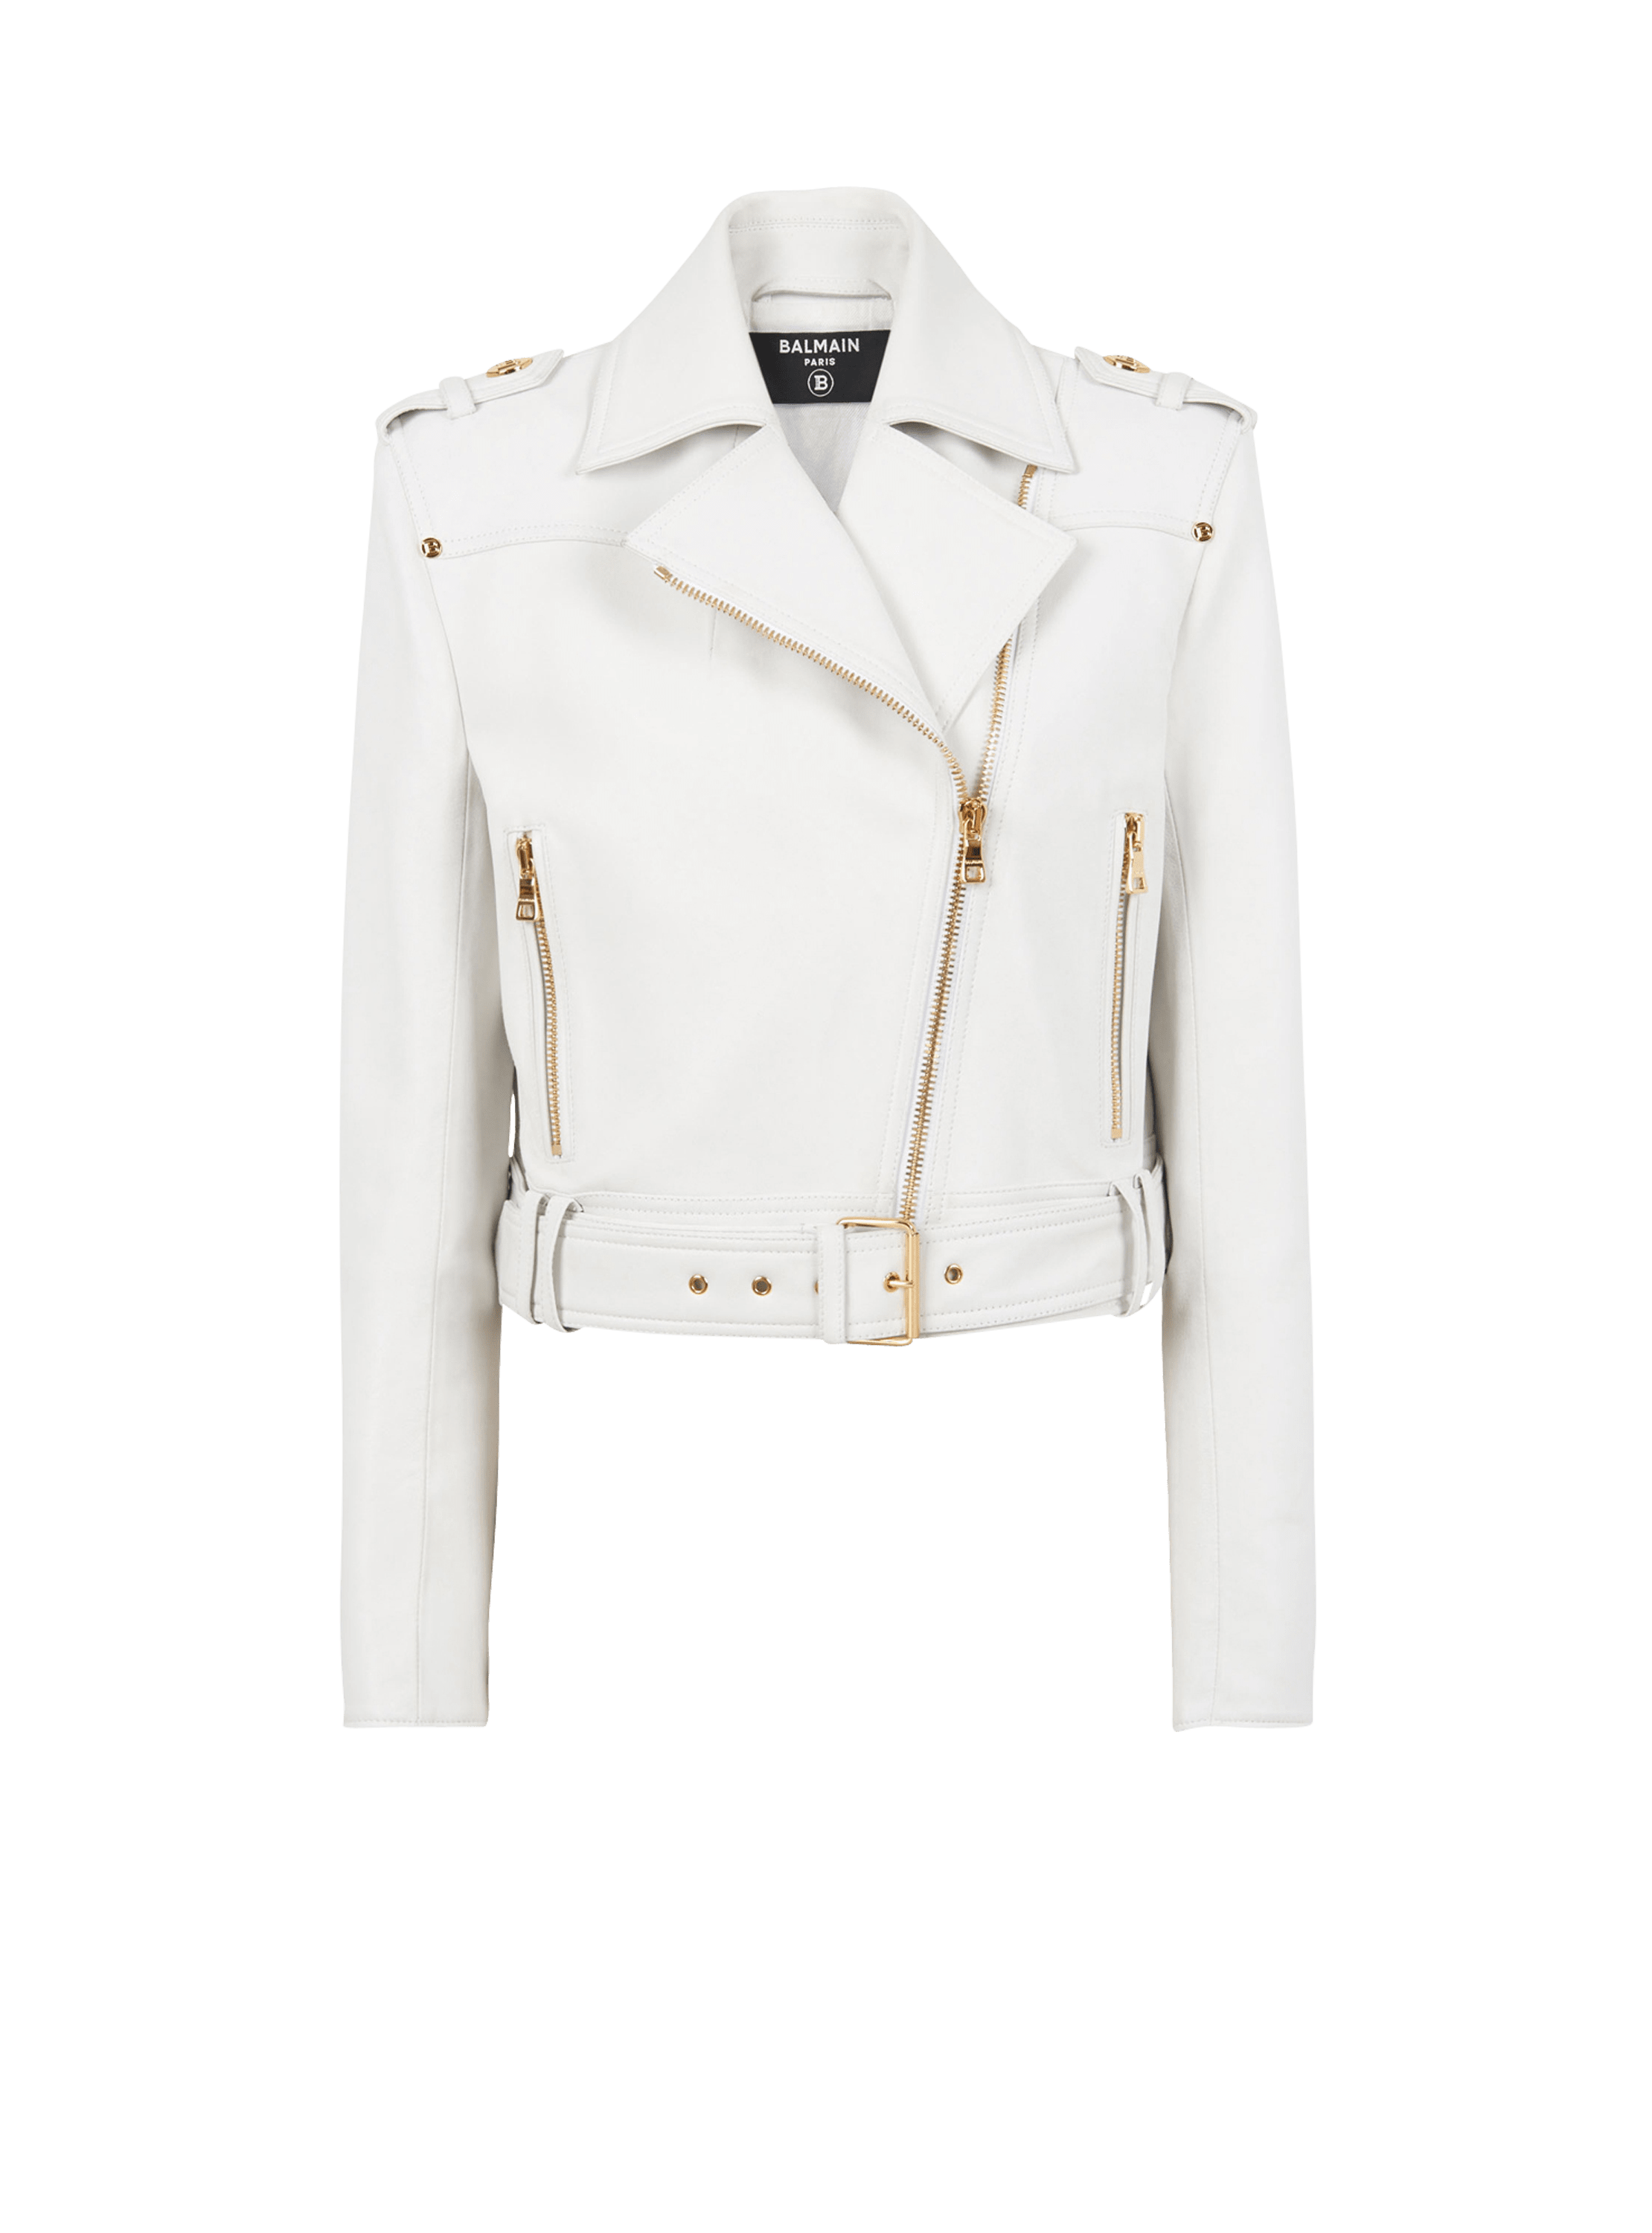 Off-White Black Leather Printed Sleeve Zip Detail Biker Jacket M